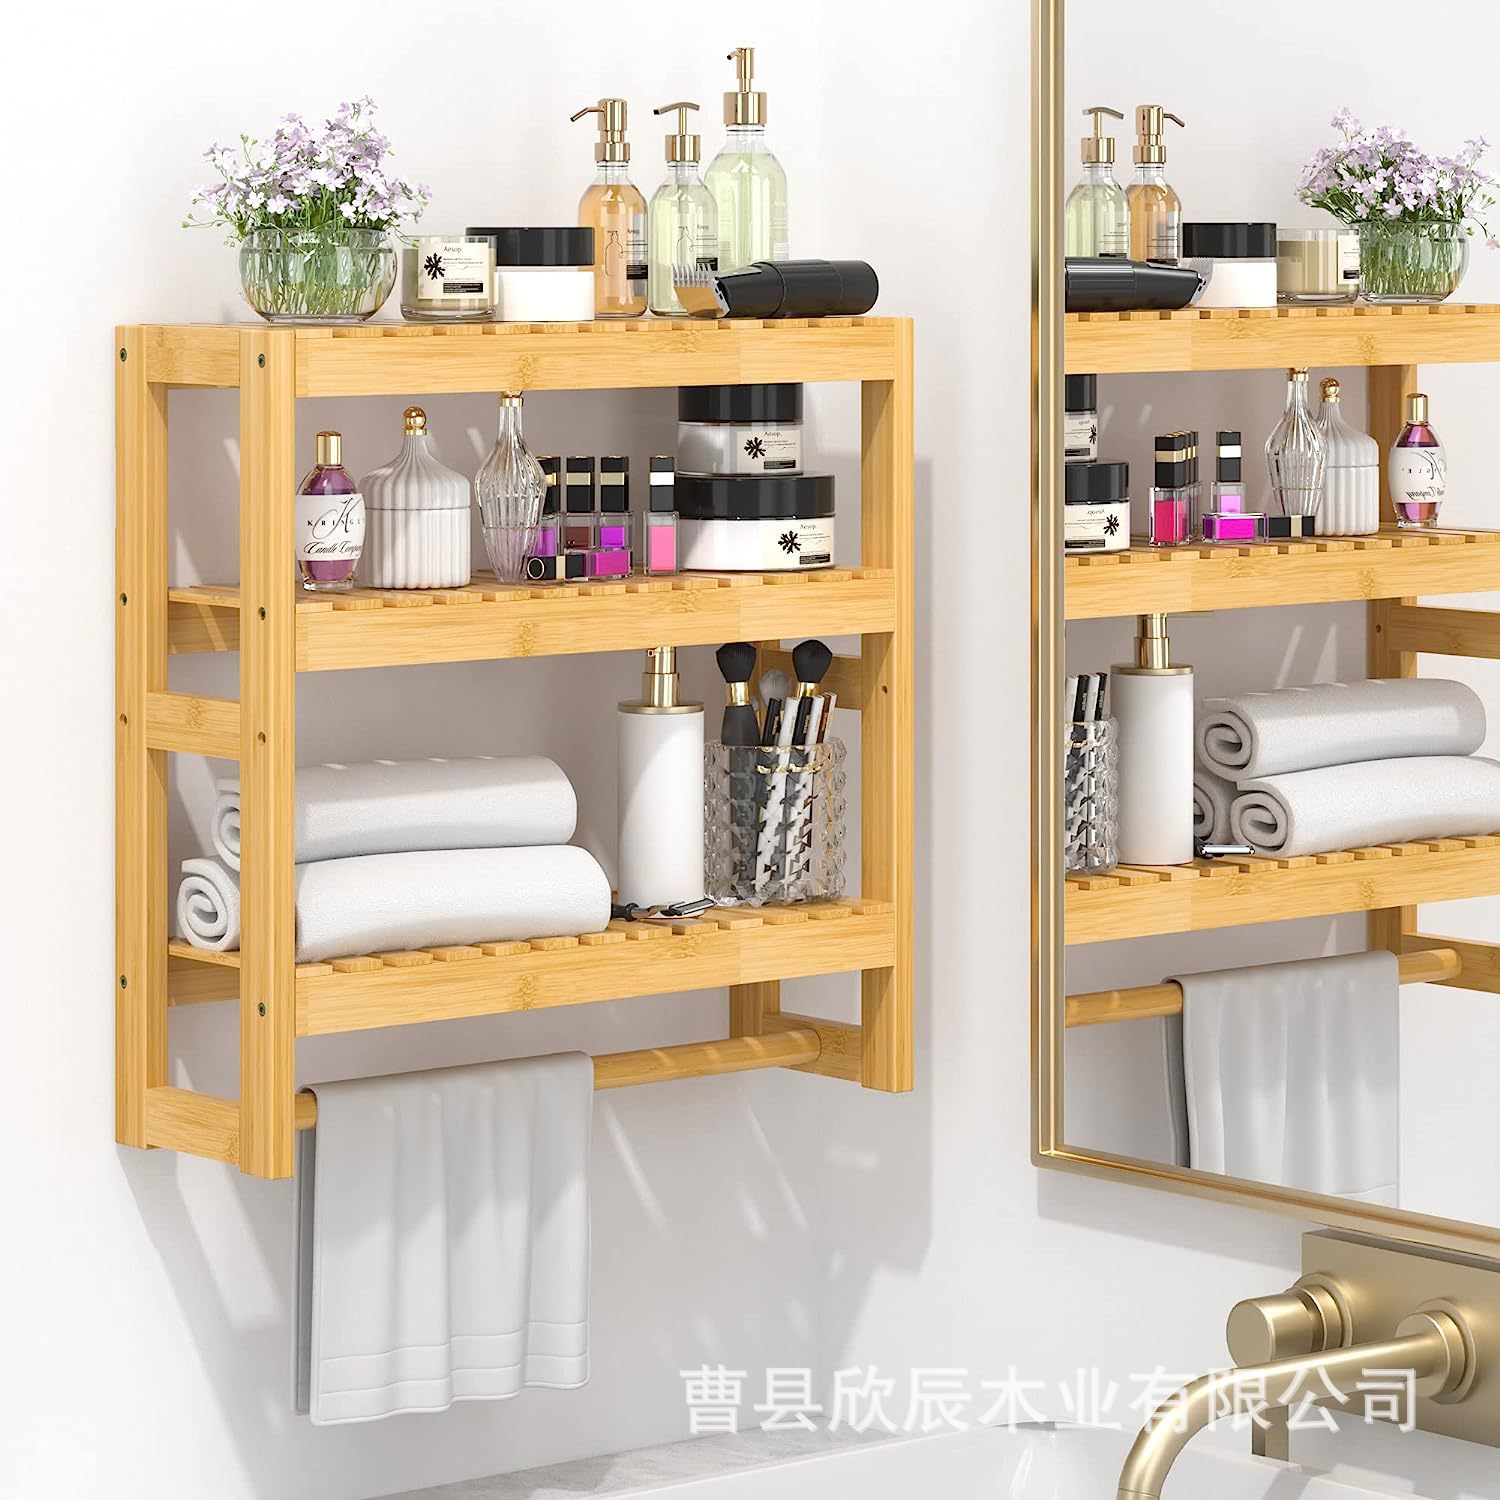 竹制浴室置物架可调节3层壁挂式收纳架家用卧室厨房杂物间储物架